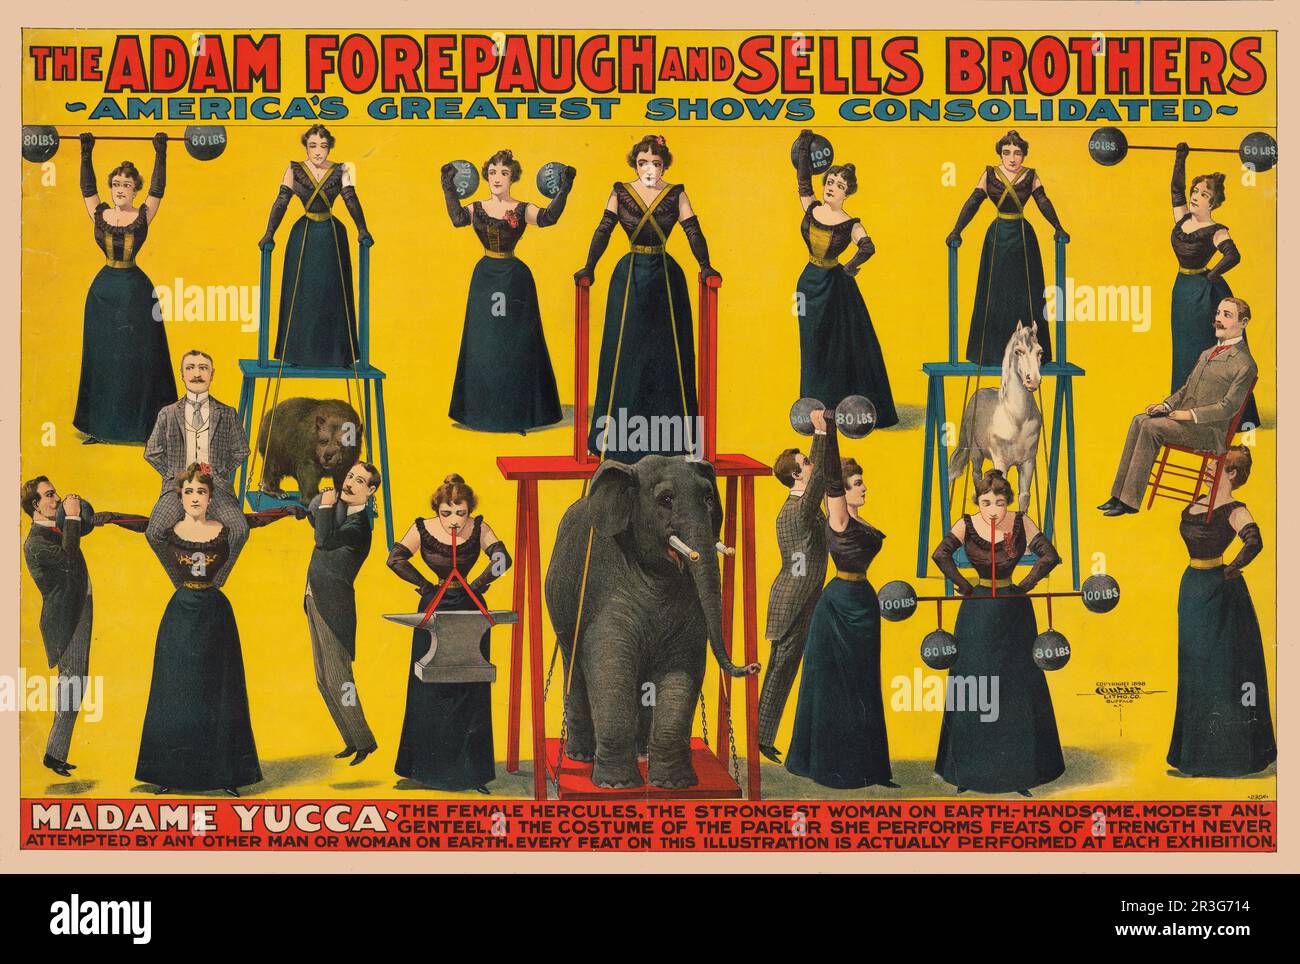 Vintage Adam Forepaugh et vend Brothers poster de cirque de Madame Yucca lever des poids, des gens, et des animaux, vers 1898. Banque D'Images